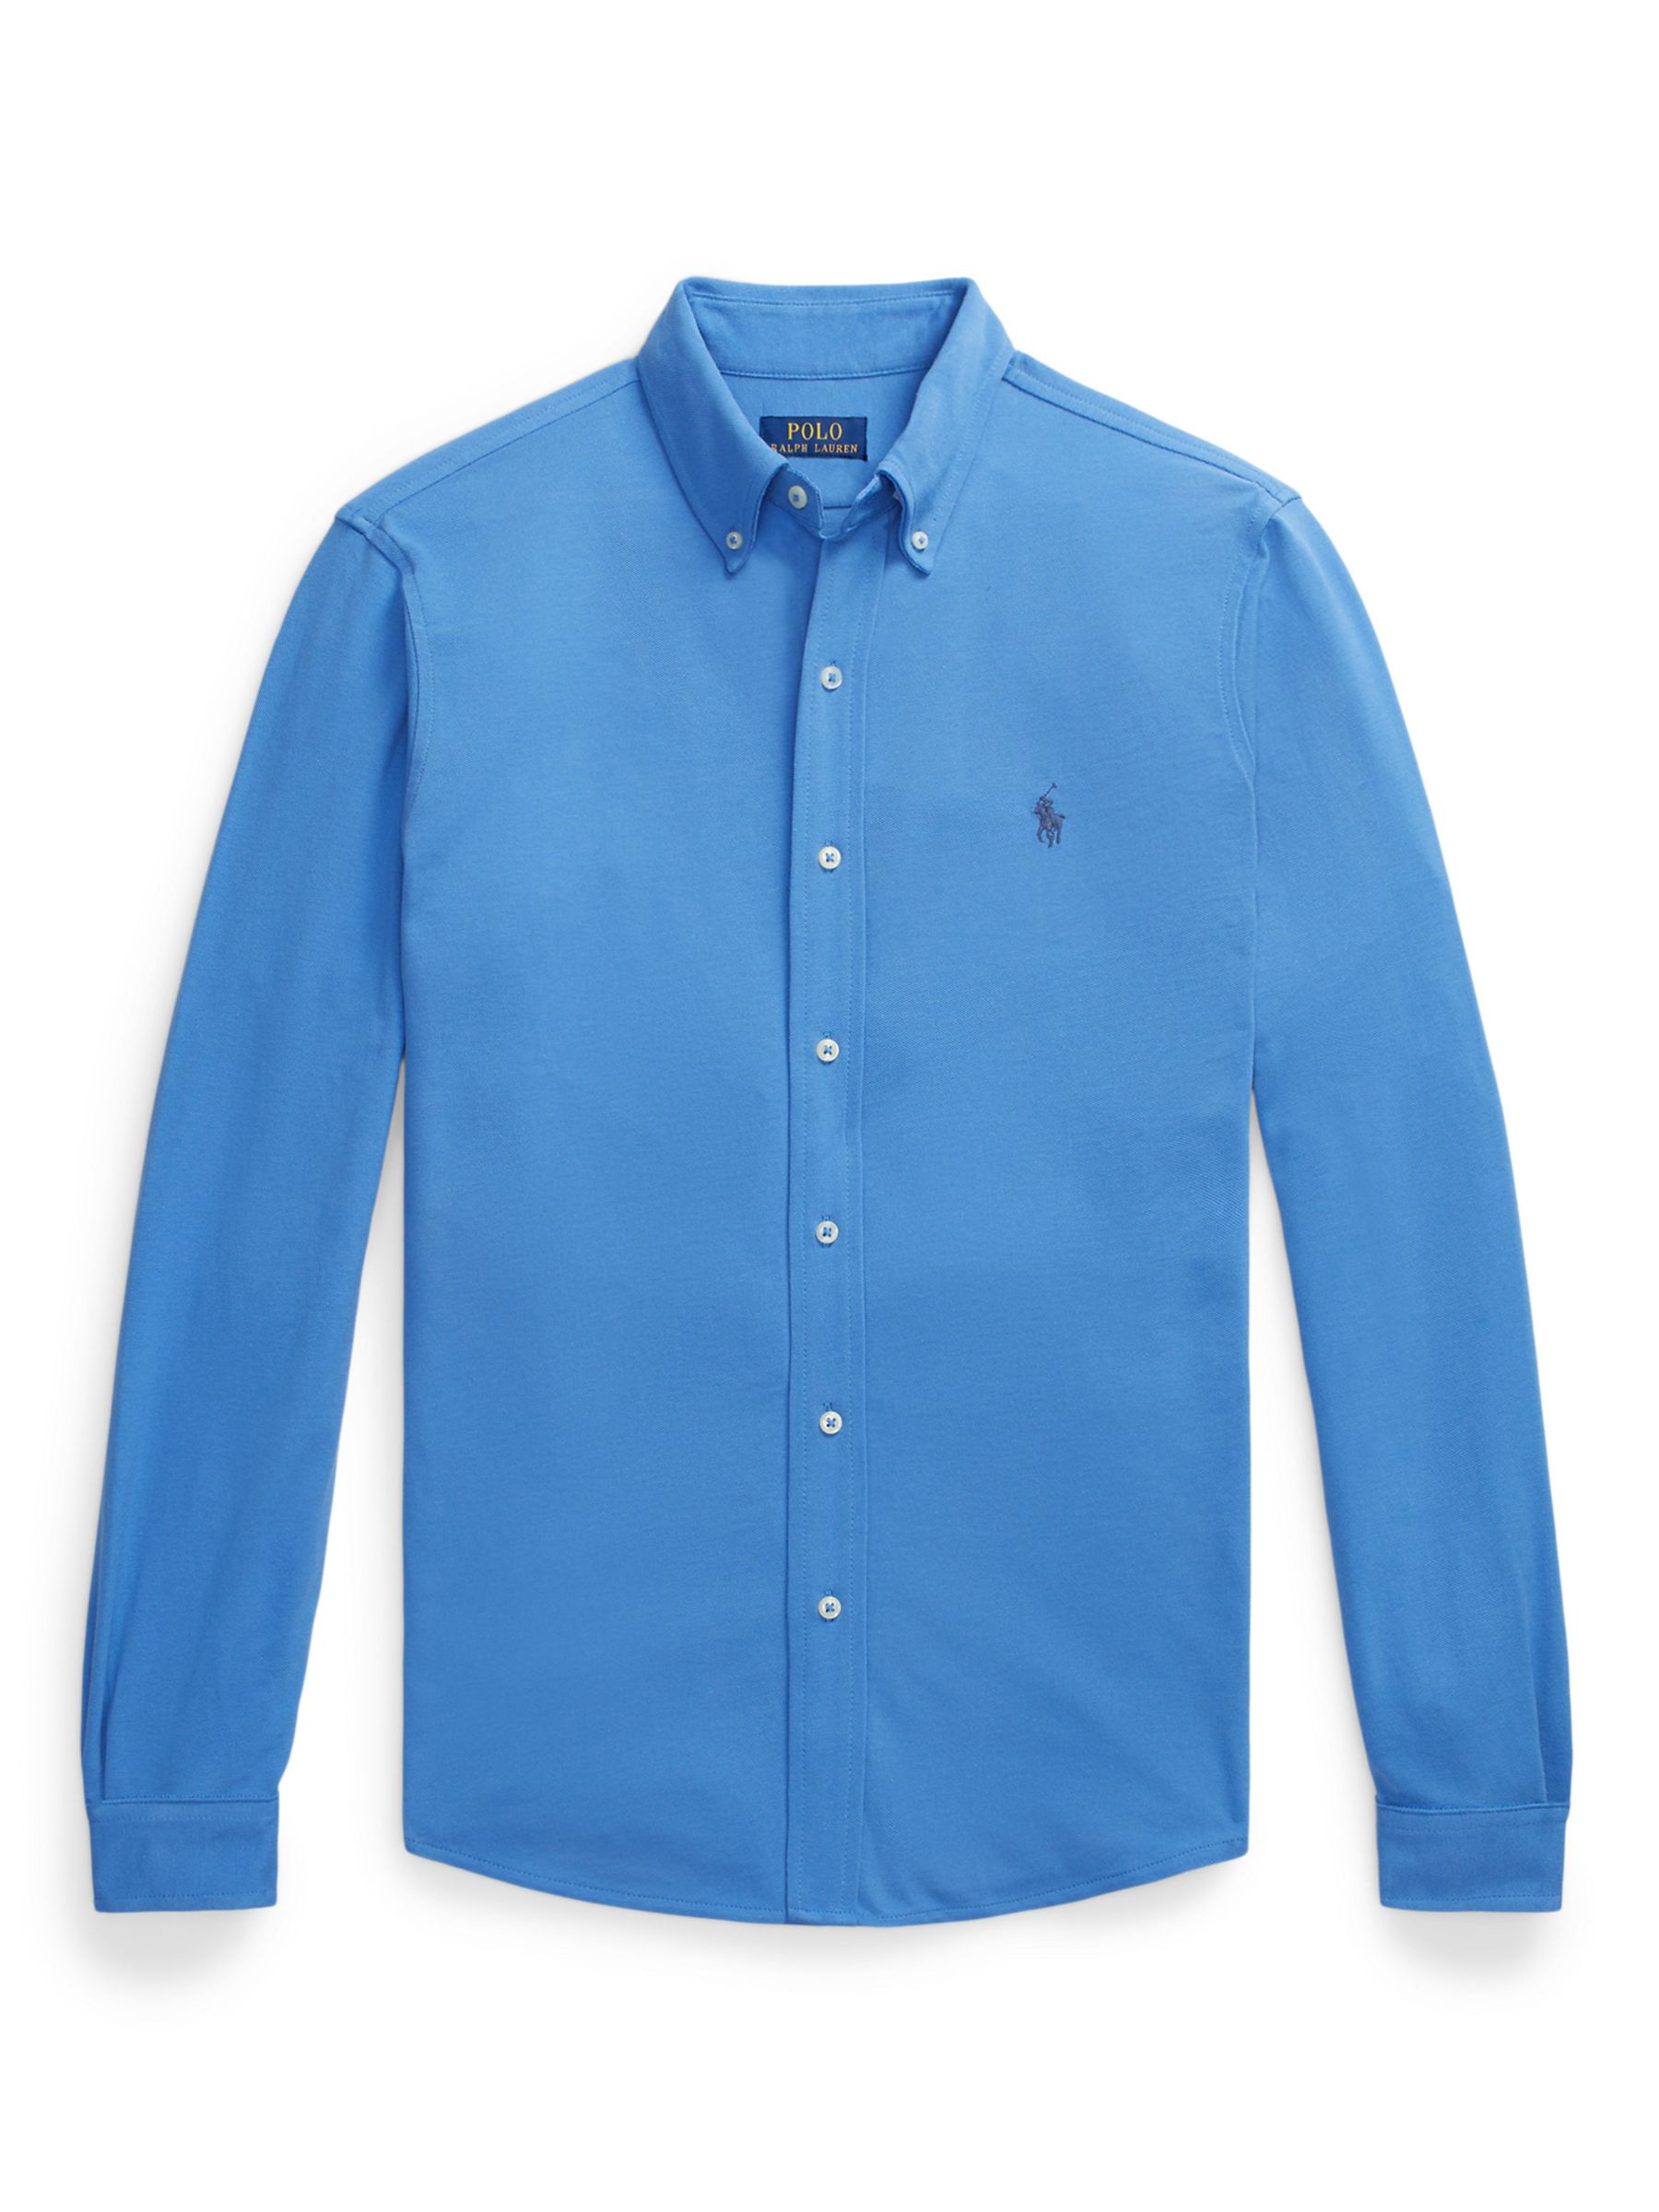 Ralph Lauren Mesh Long Sleeve Shirt, Blue, S